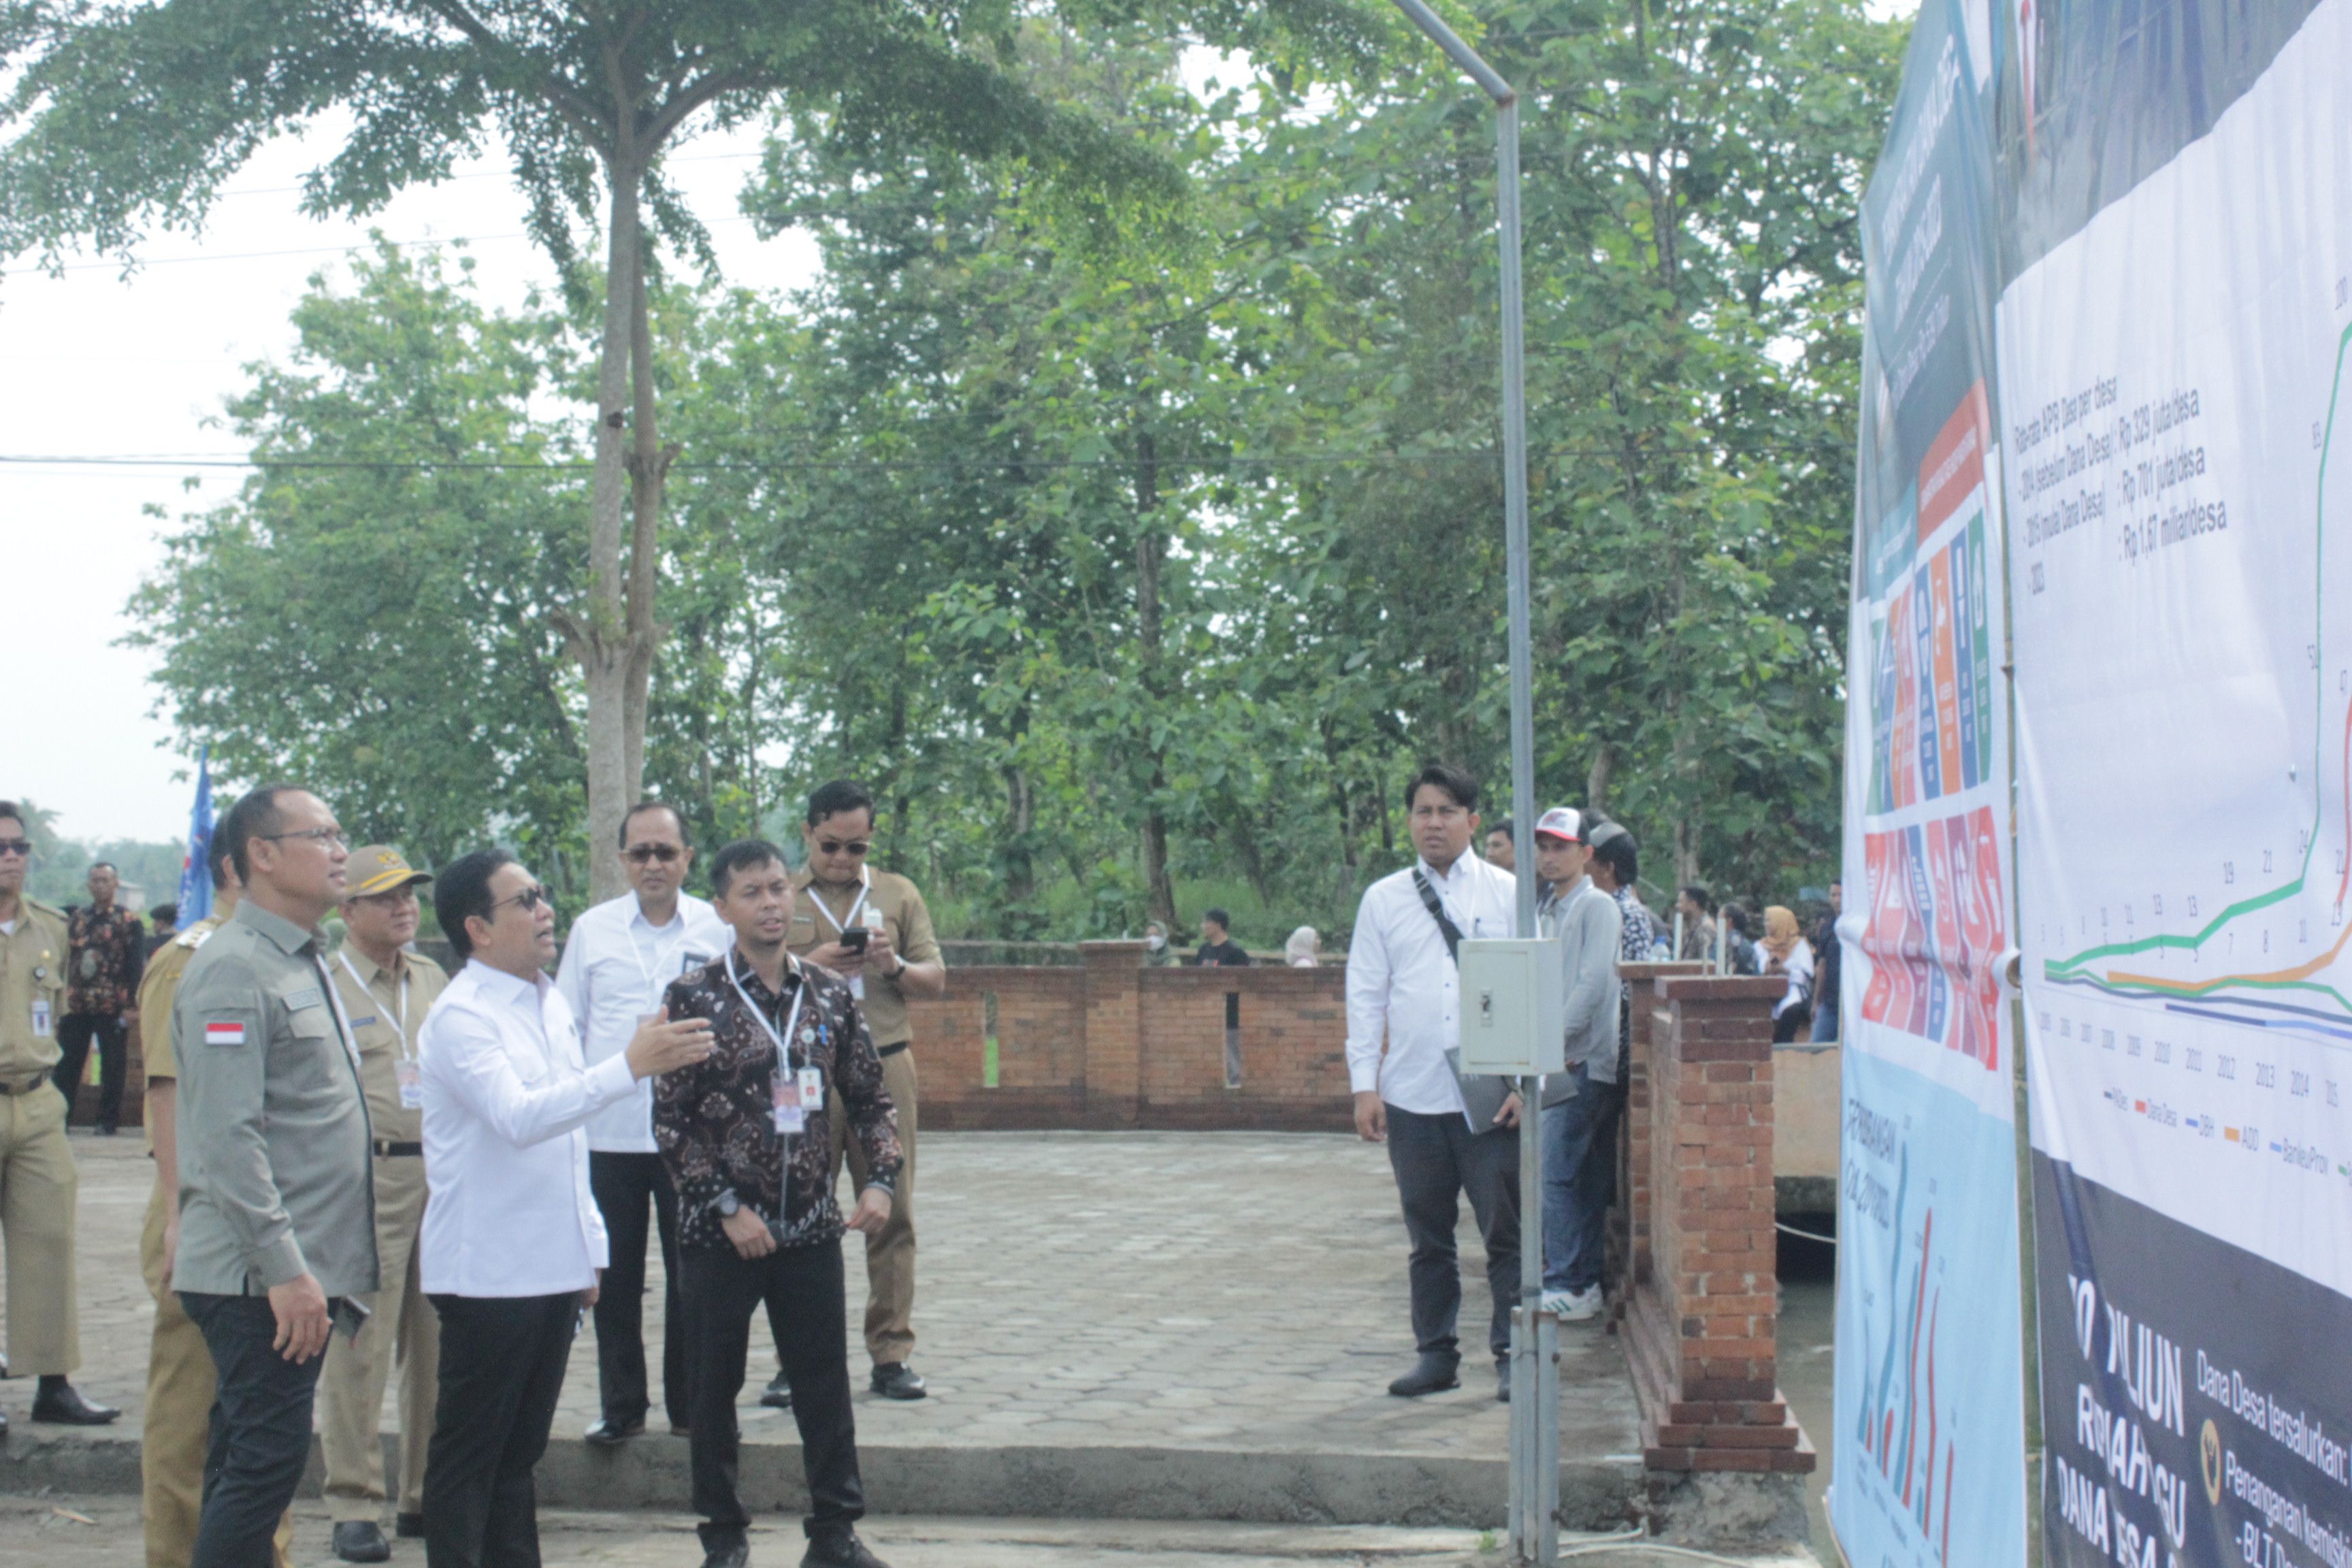 Gus Menteri Cek Kesiapan Lokasi Kunjungan Presiden Jokowi di Desa Wisata Pagak Banjarnegara